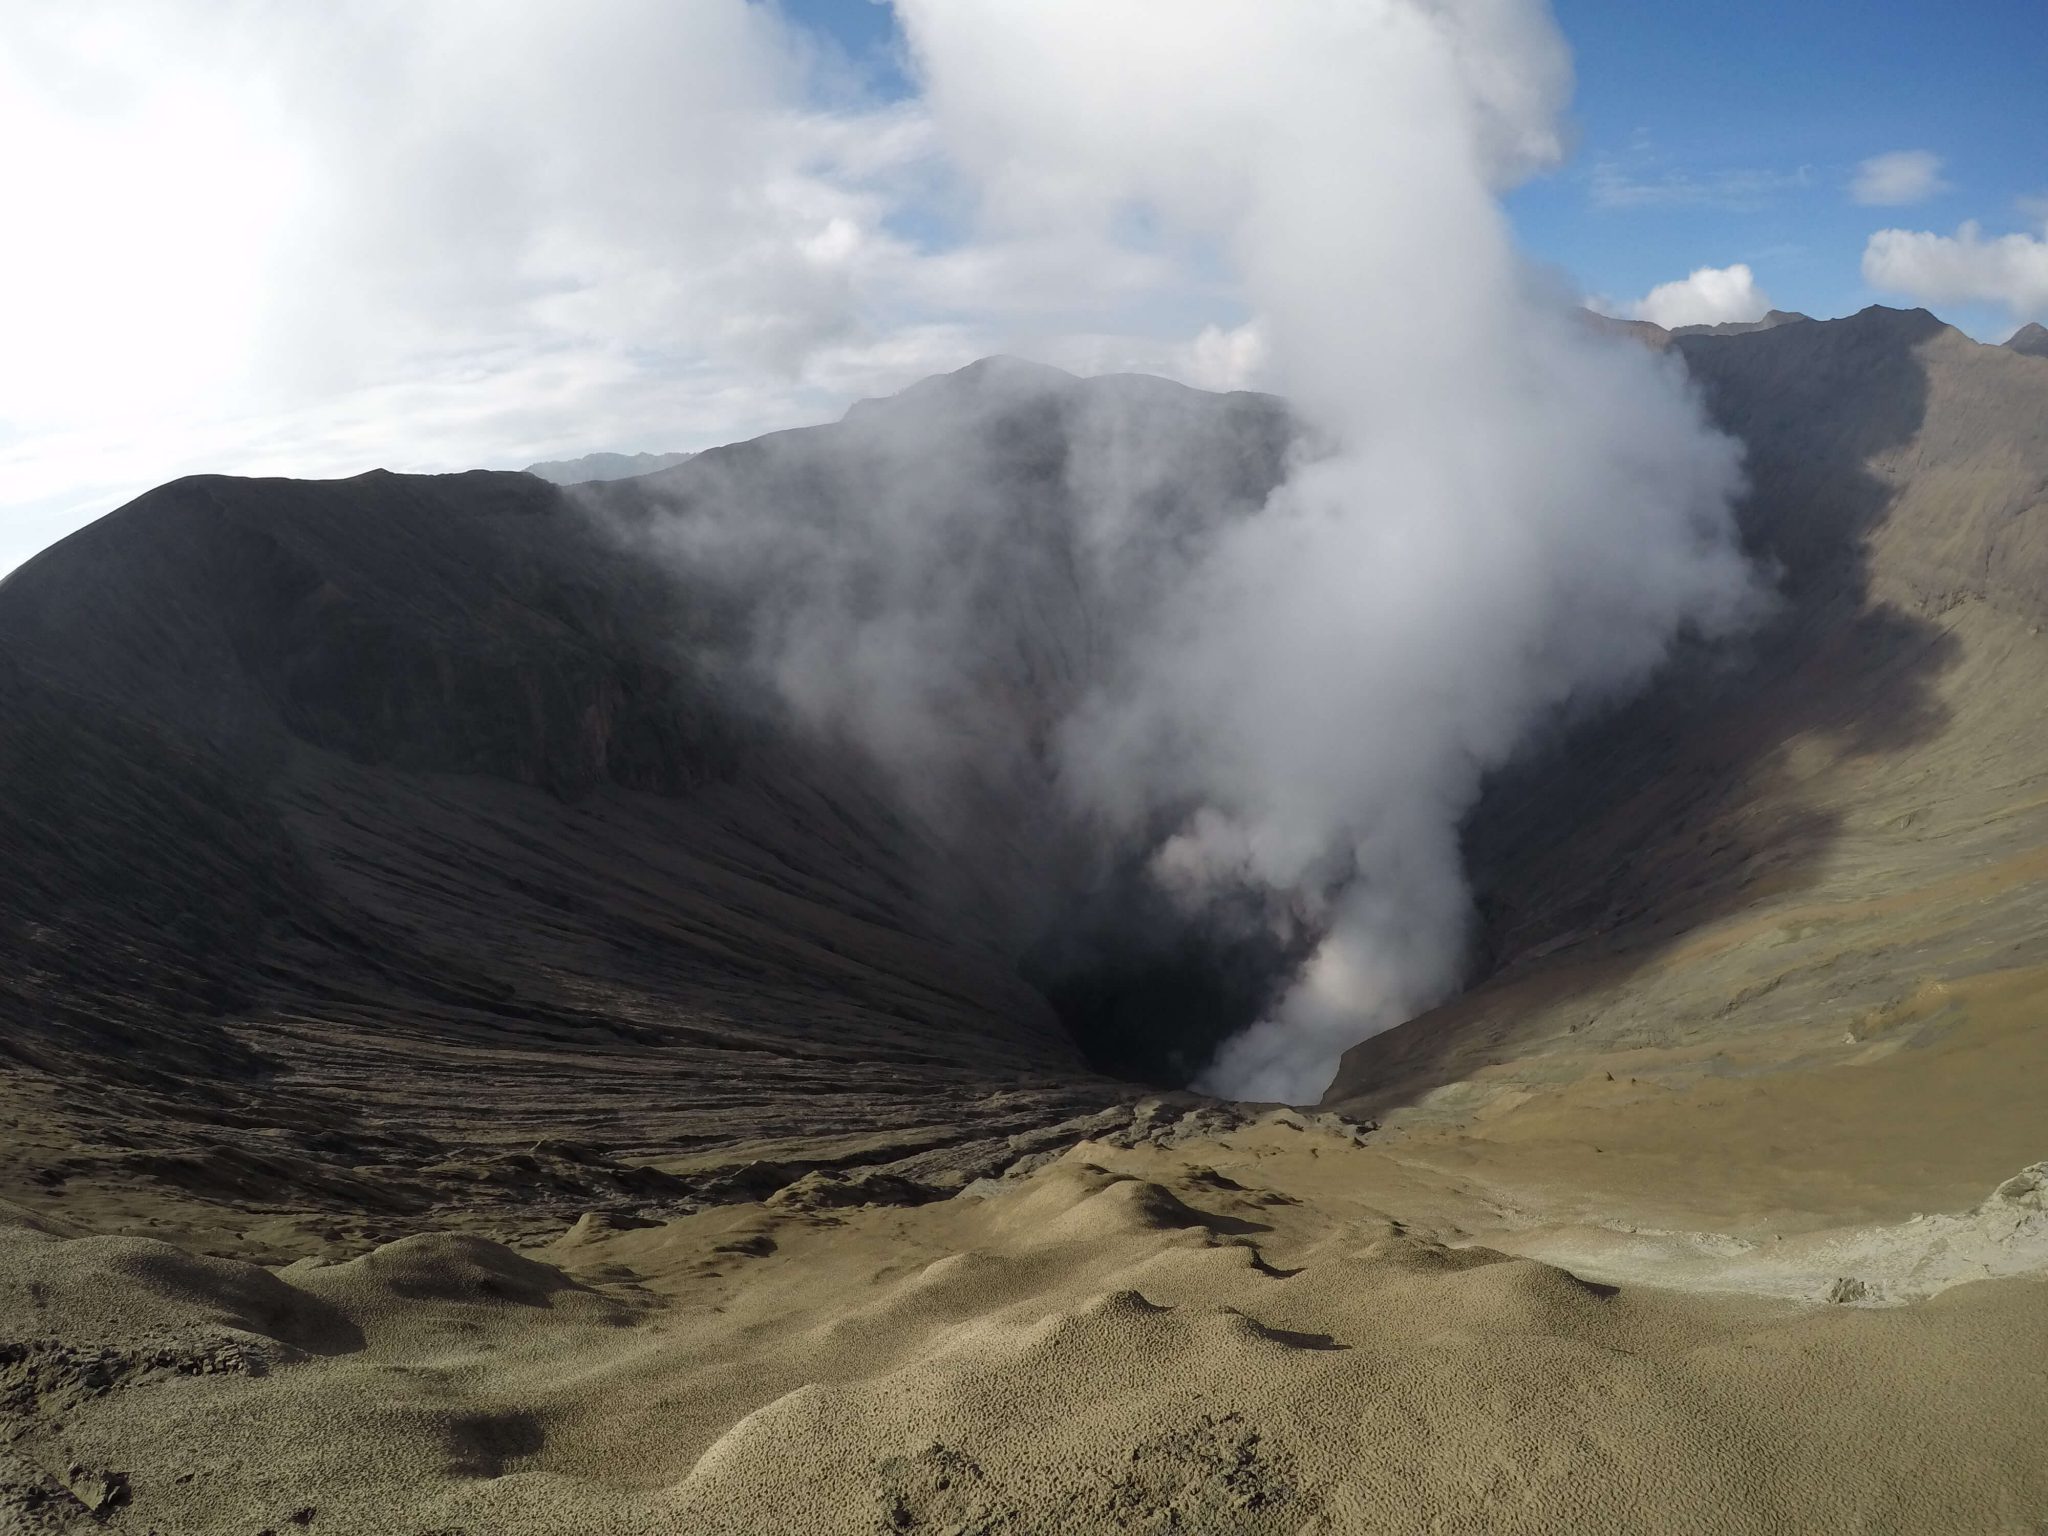 View inside a volcanoe